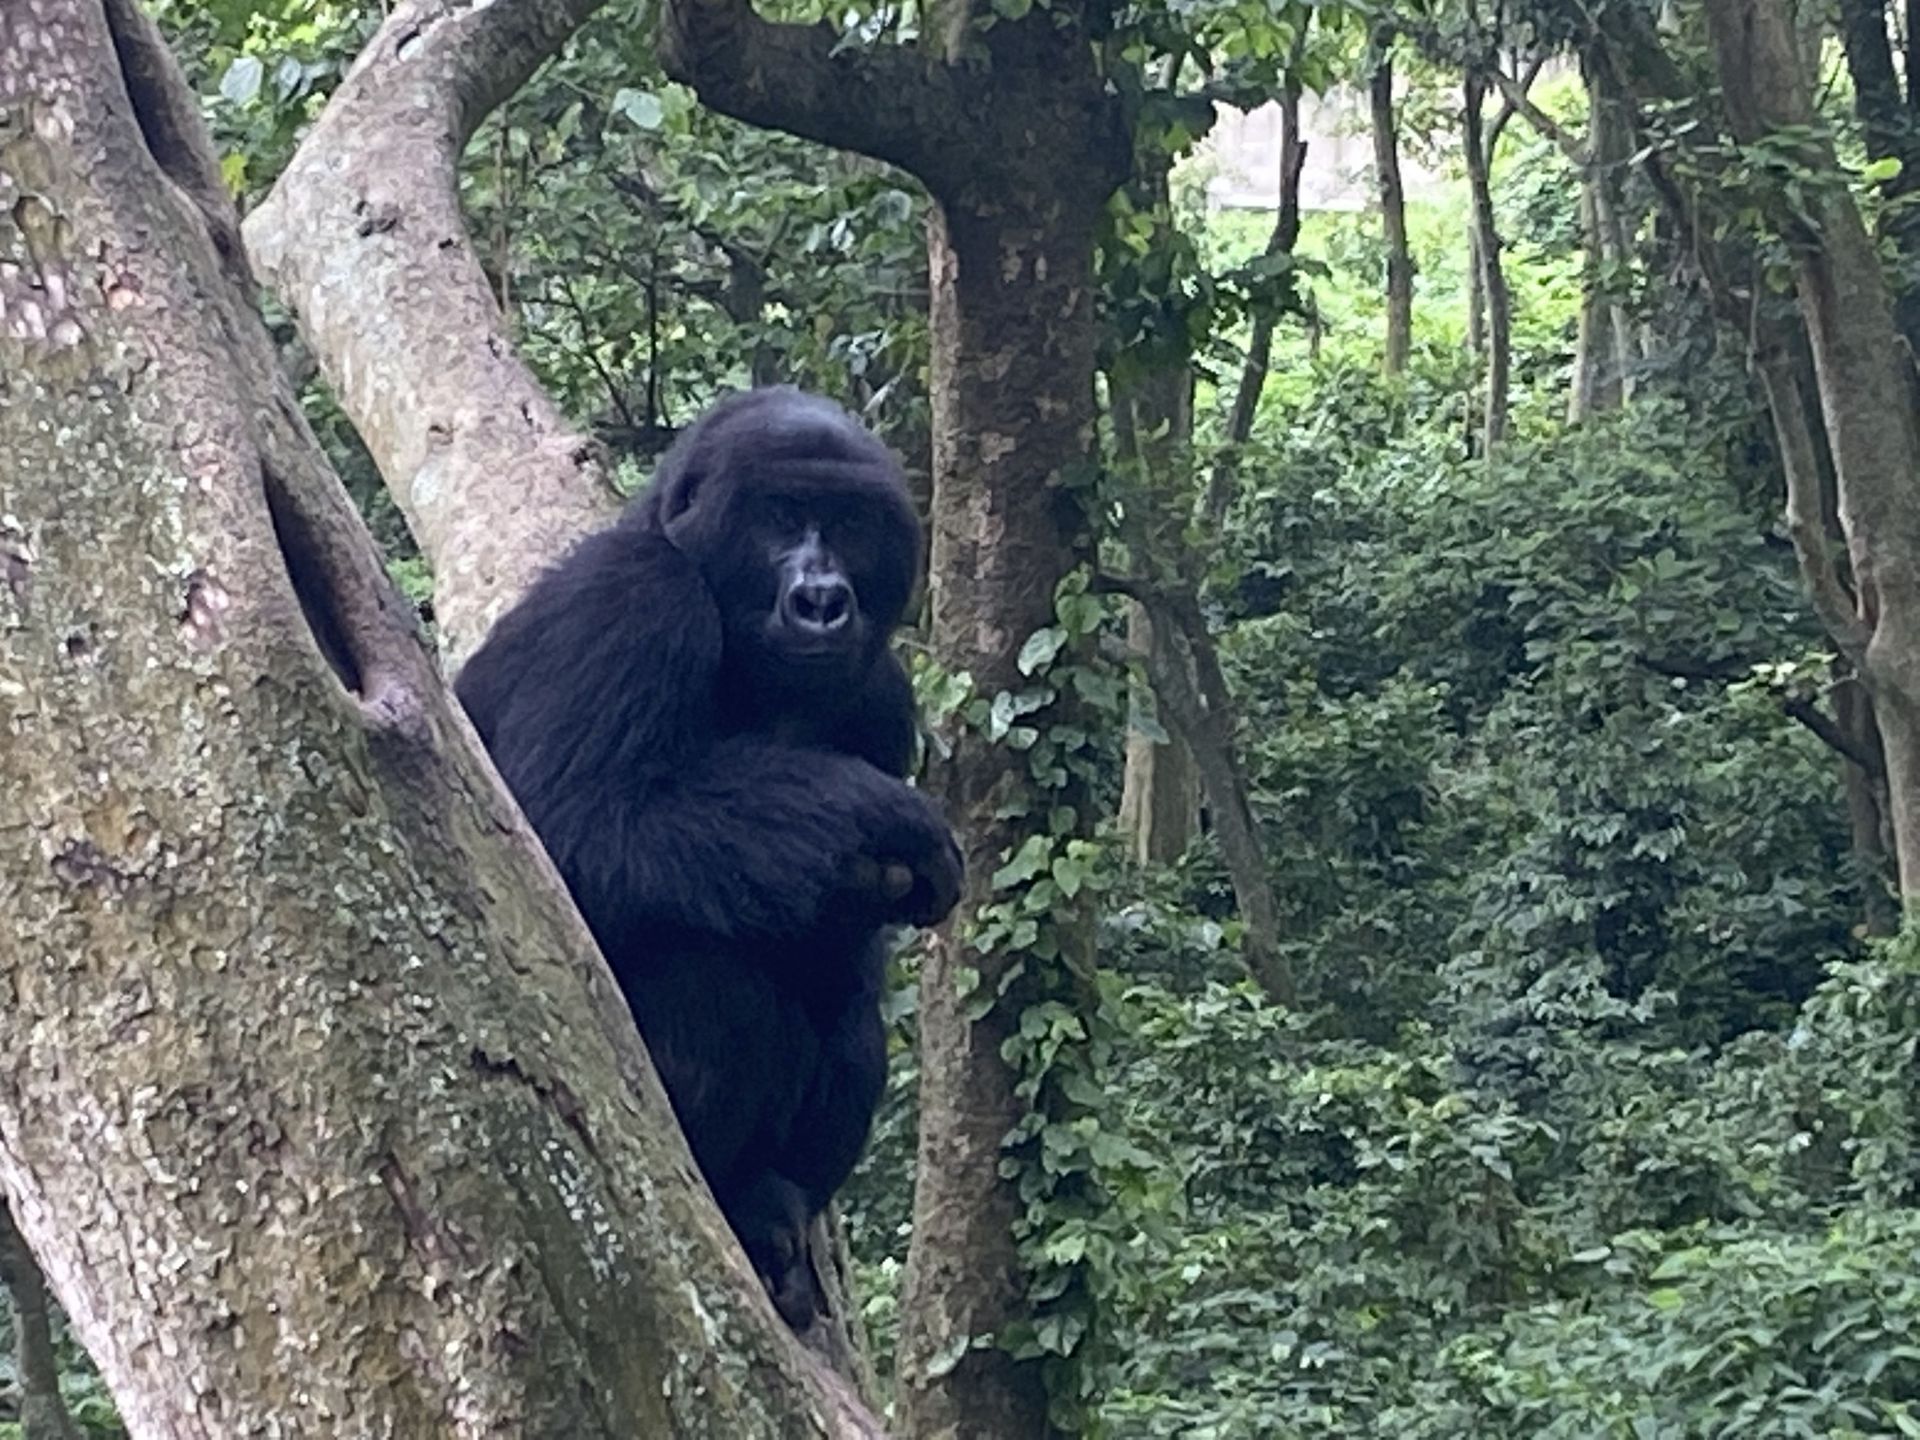 Matabishi est un mâle âgé de 11 ans. Près d’un millier de gorilles des montagnes vivent dans cette région frontalière avec le Rwanda et l’Ouganda. Le Parc des Virunga en compte environ 350.